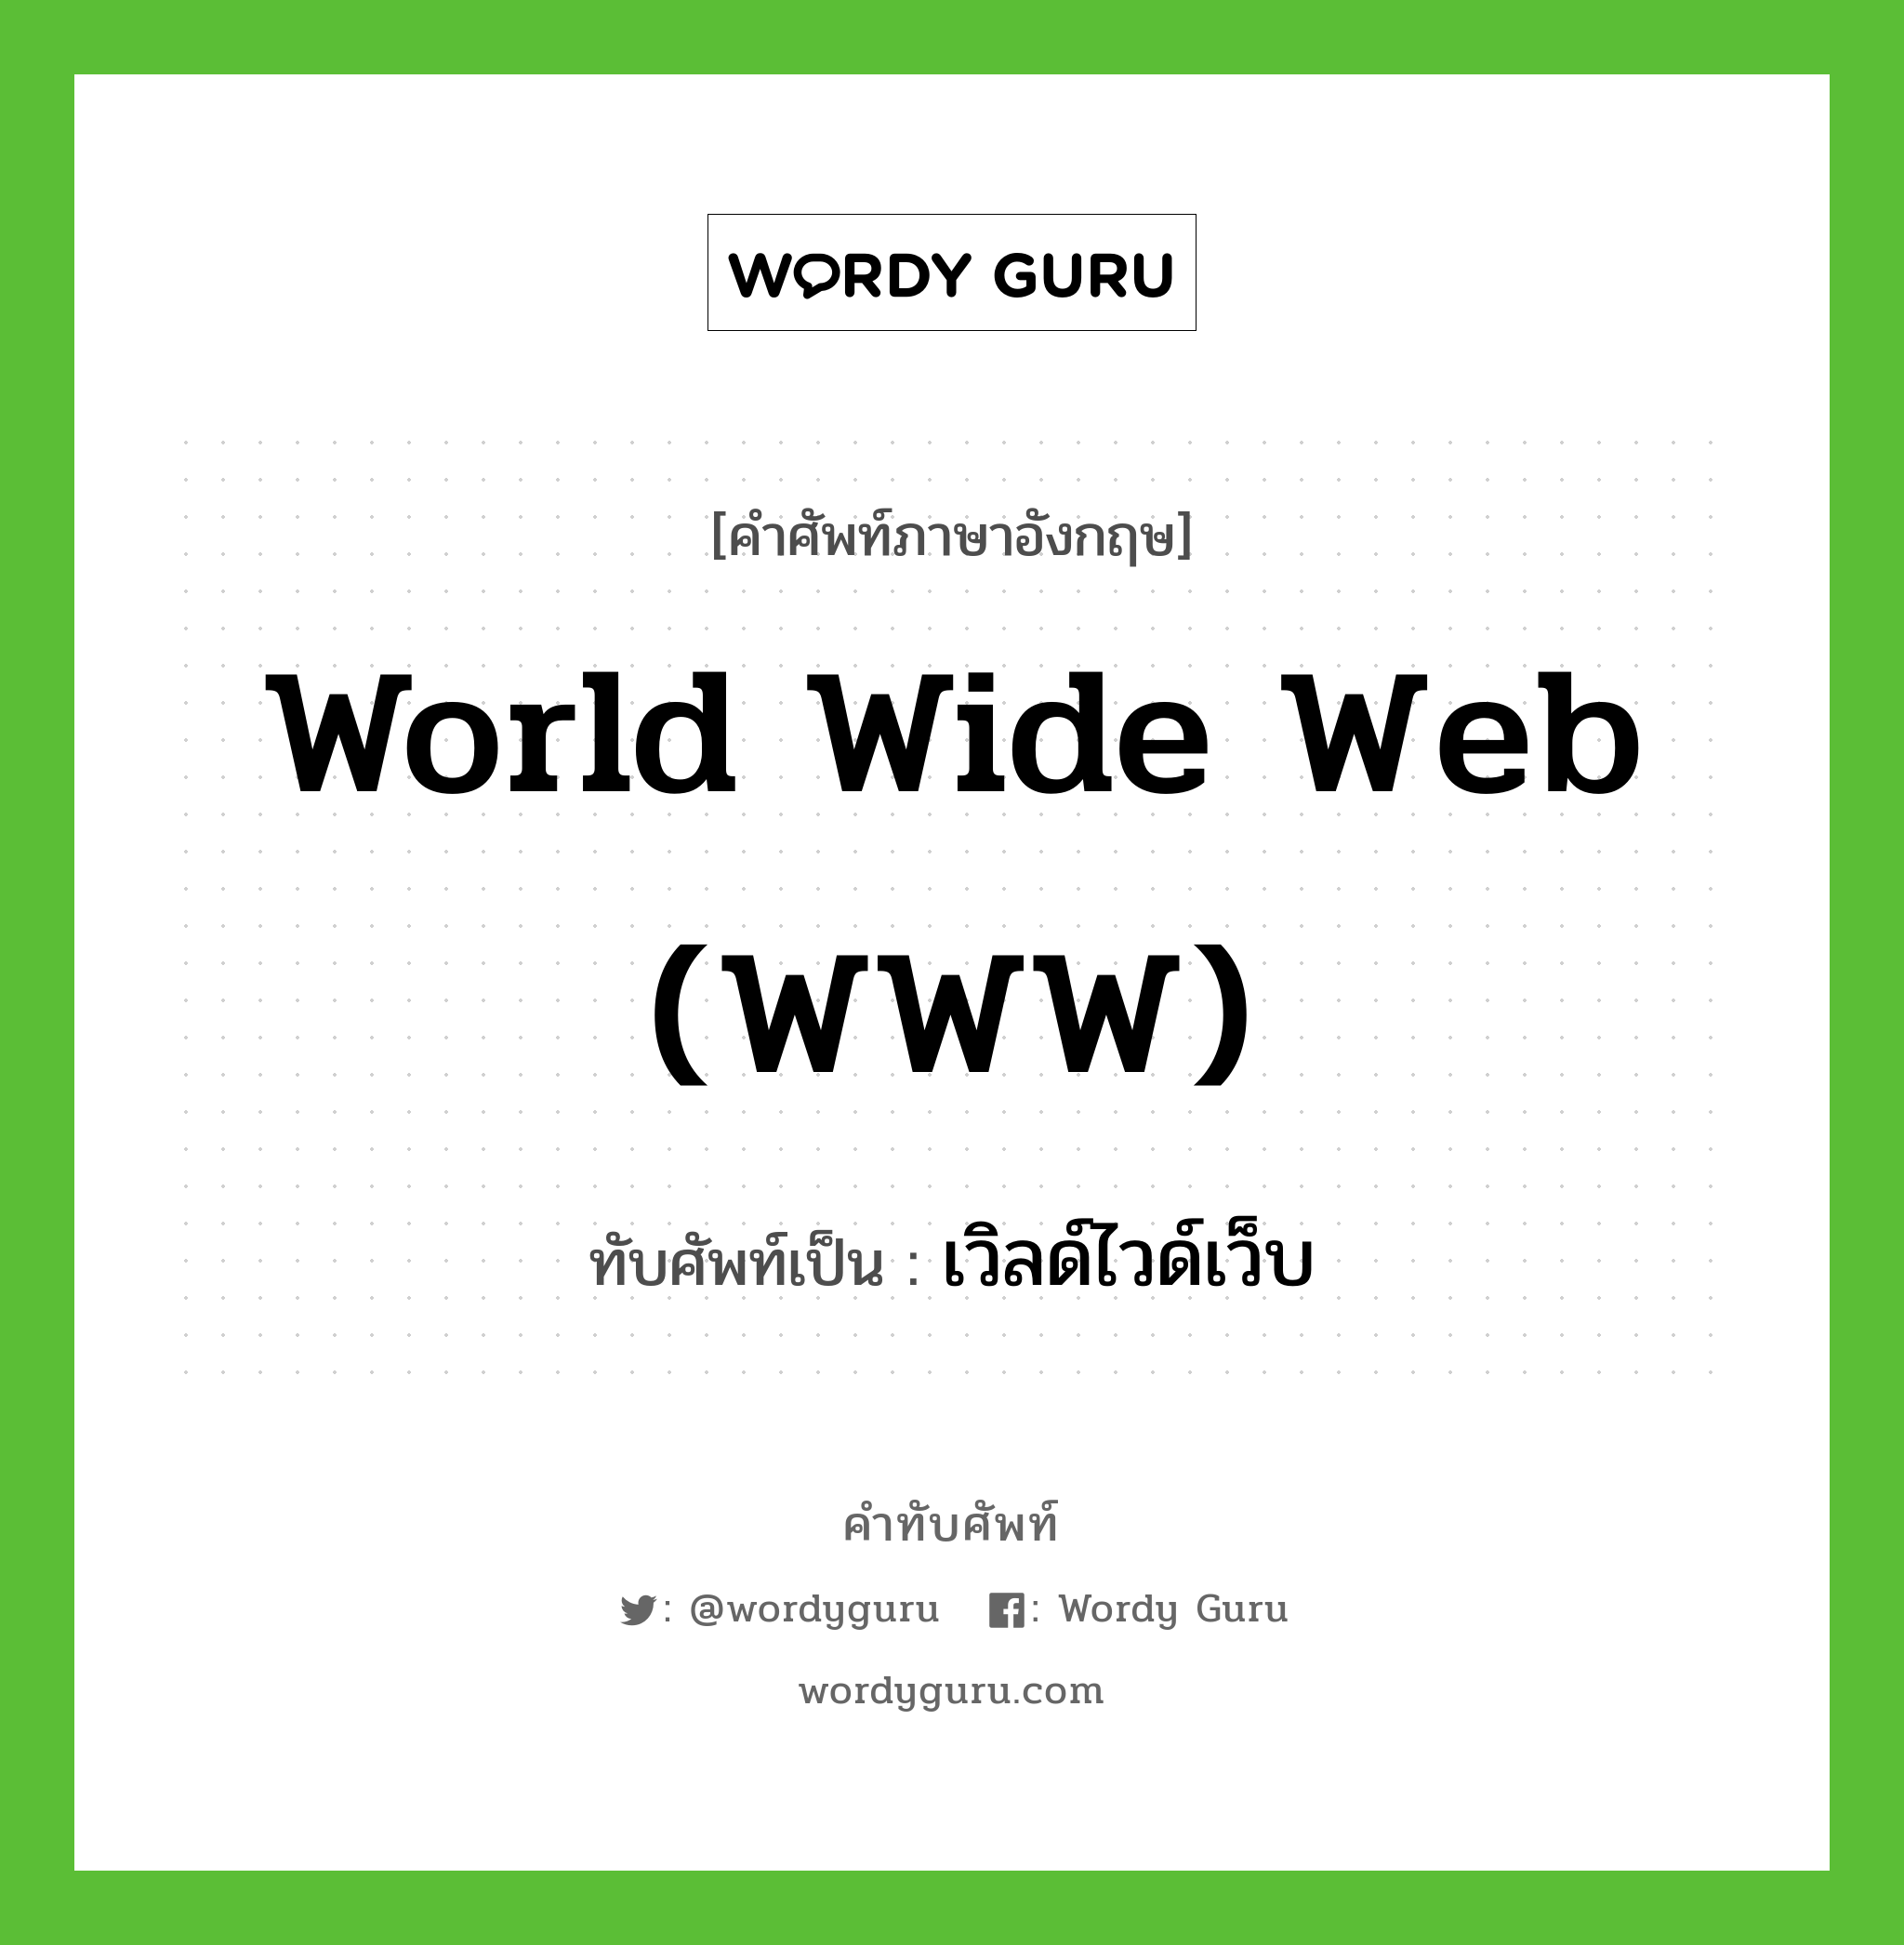 World Wide Web (Www) เขียนเป็นคำไทยว่าอะไร? | Wordy Guru